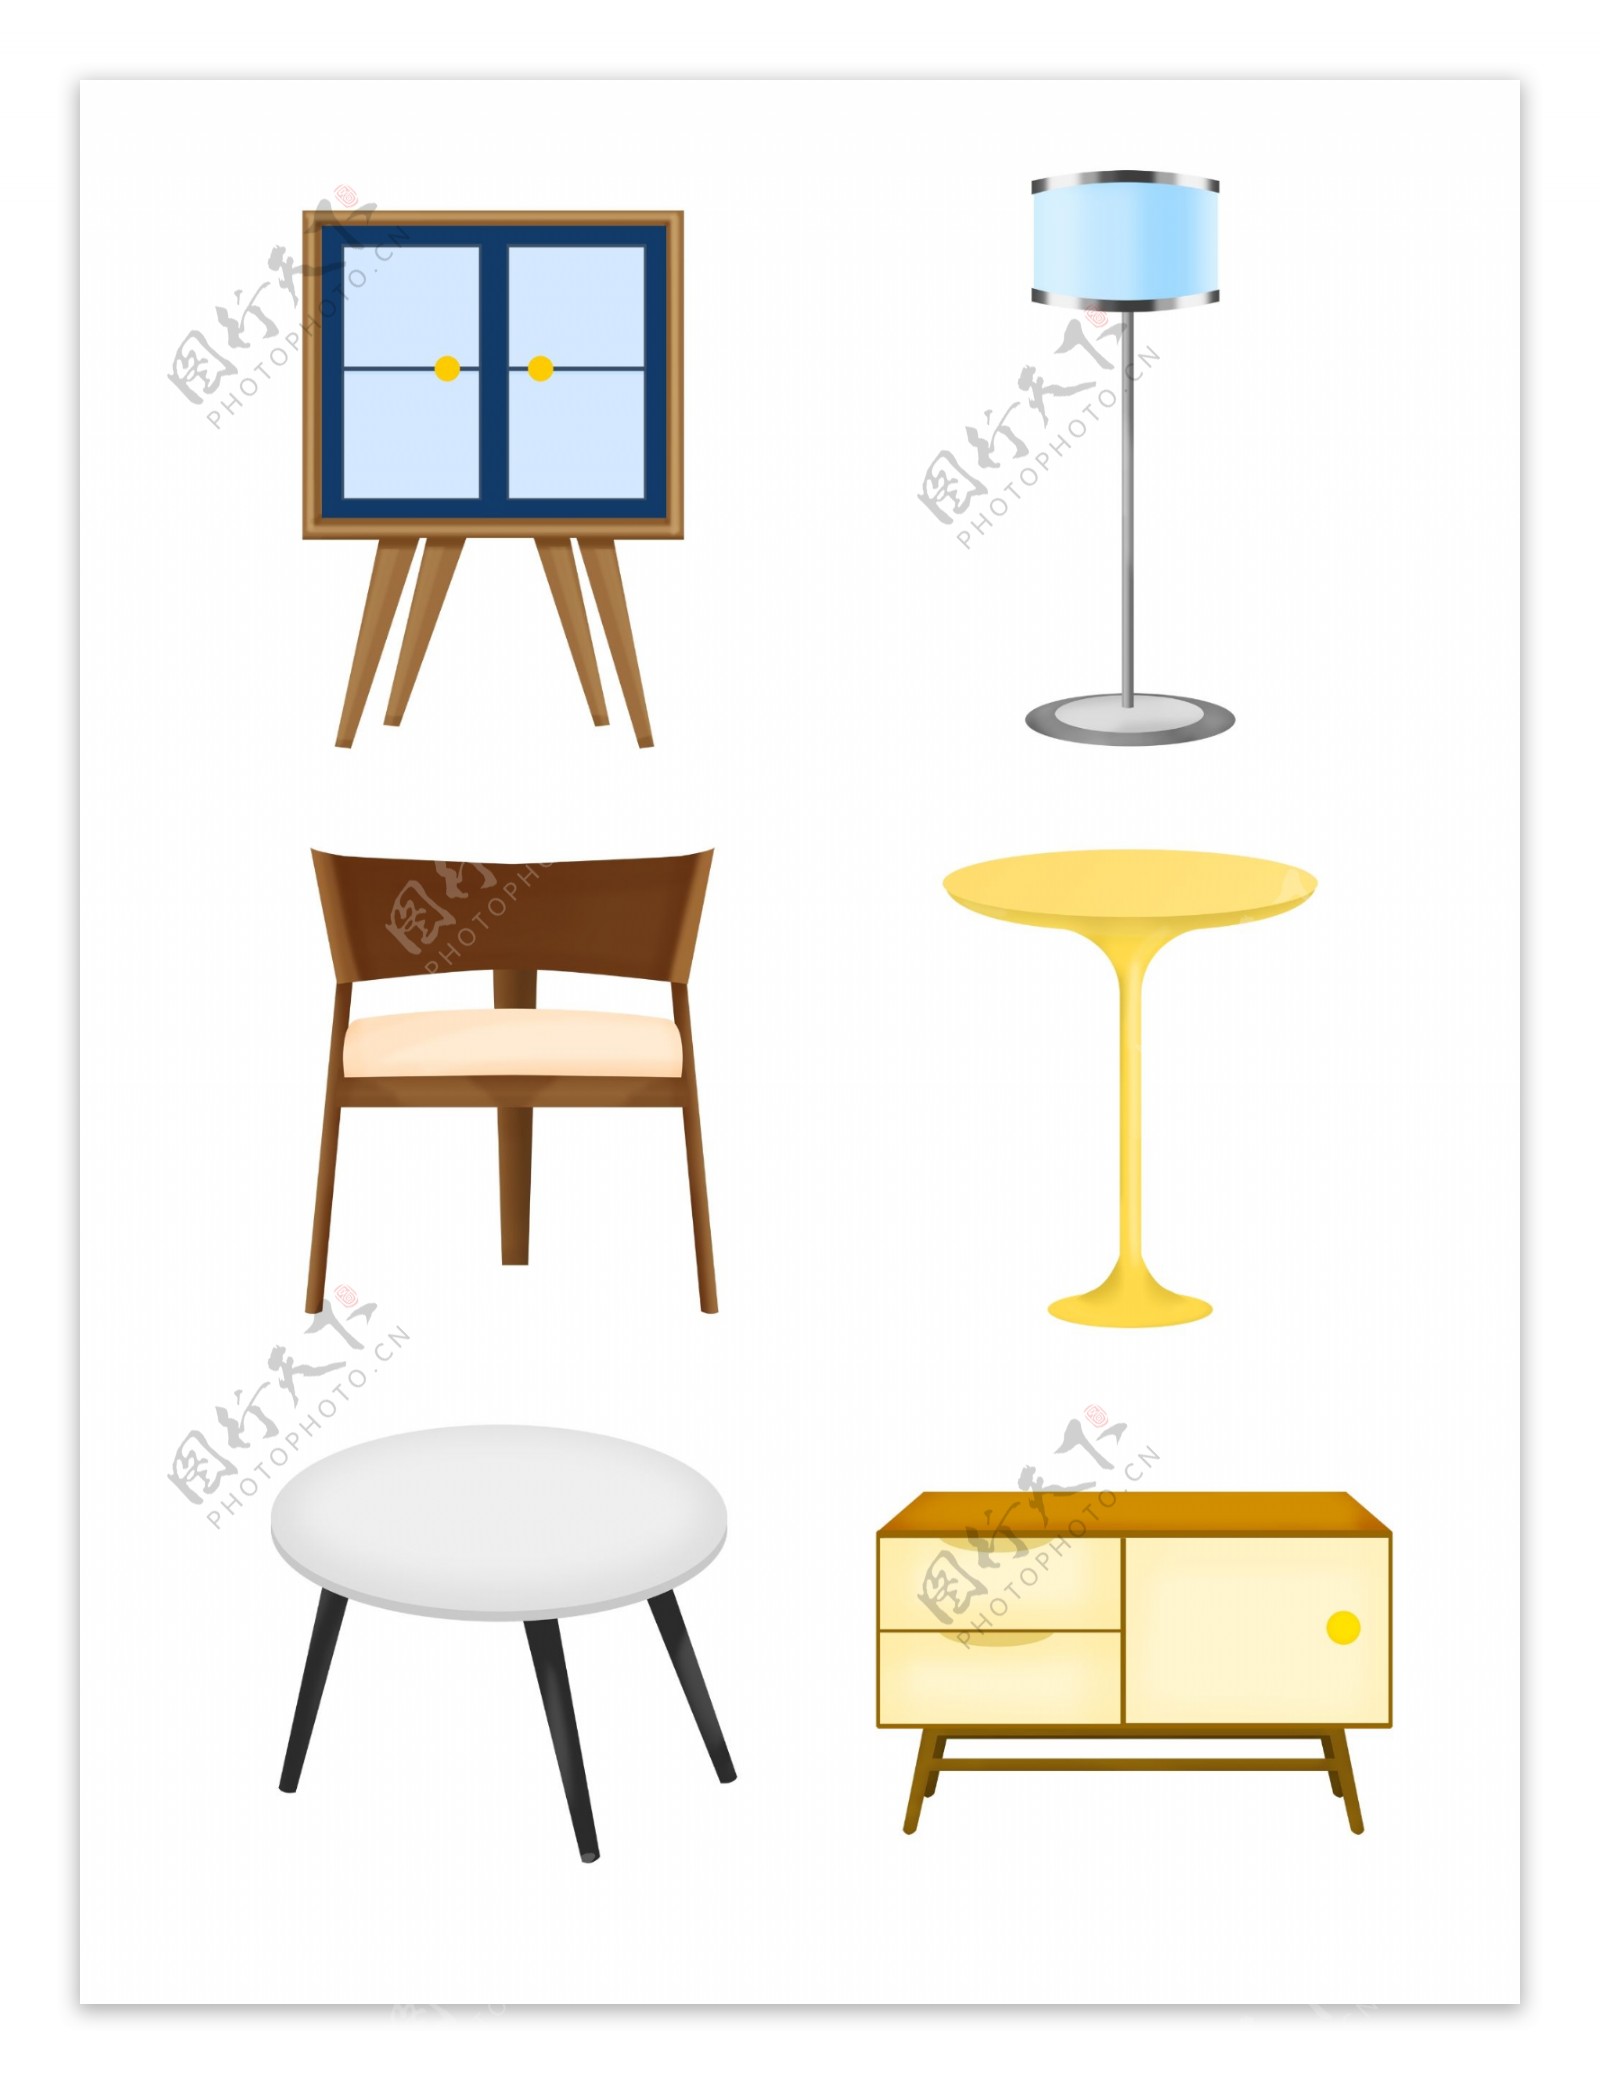 简约风格家具家居椅子柜子桌子软装元素